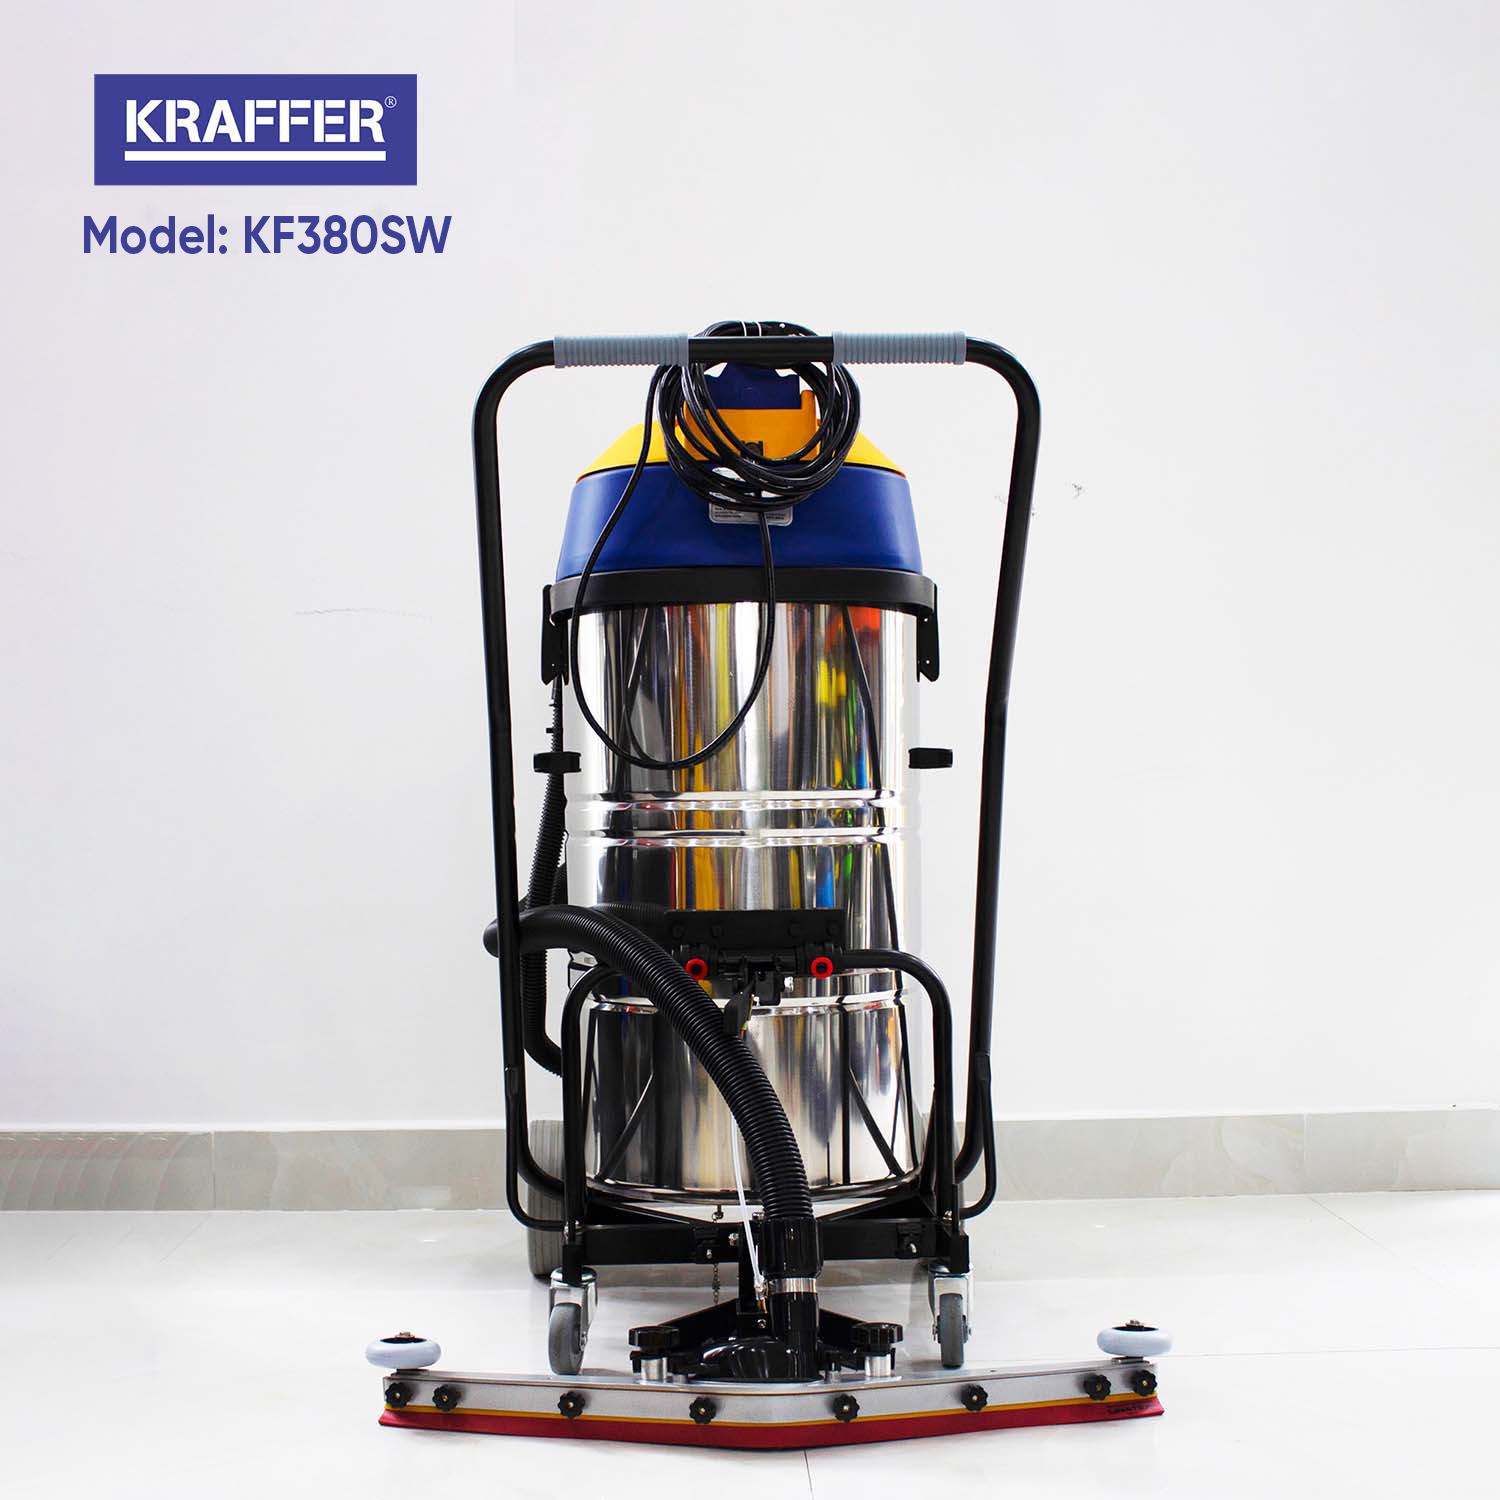 Hình minh họa máy hút bụi Kraffer Model KF380SW